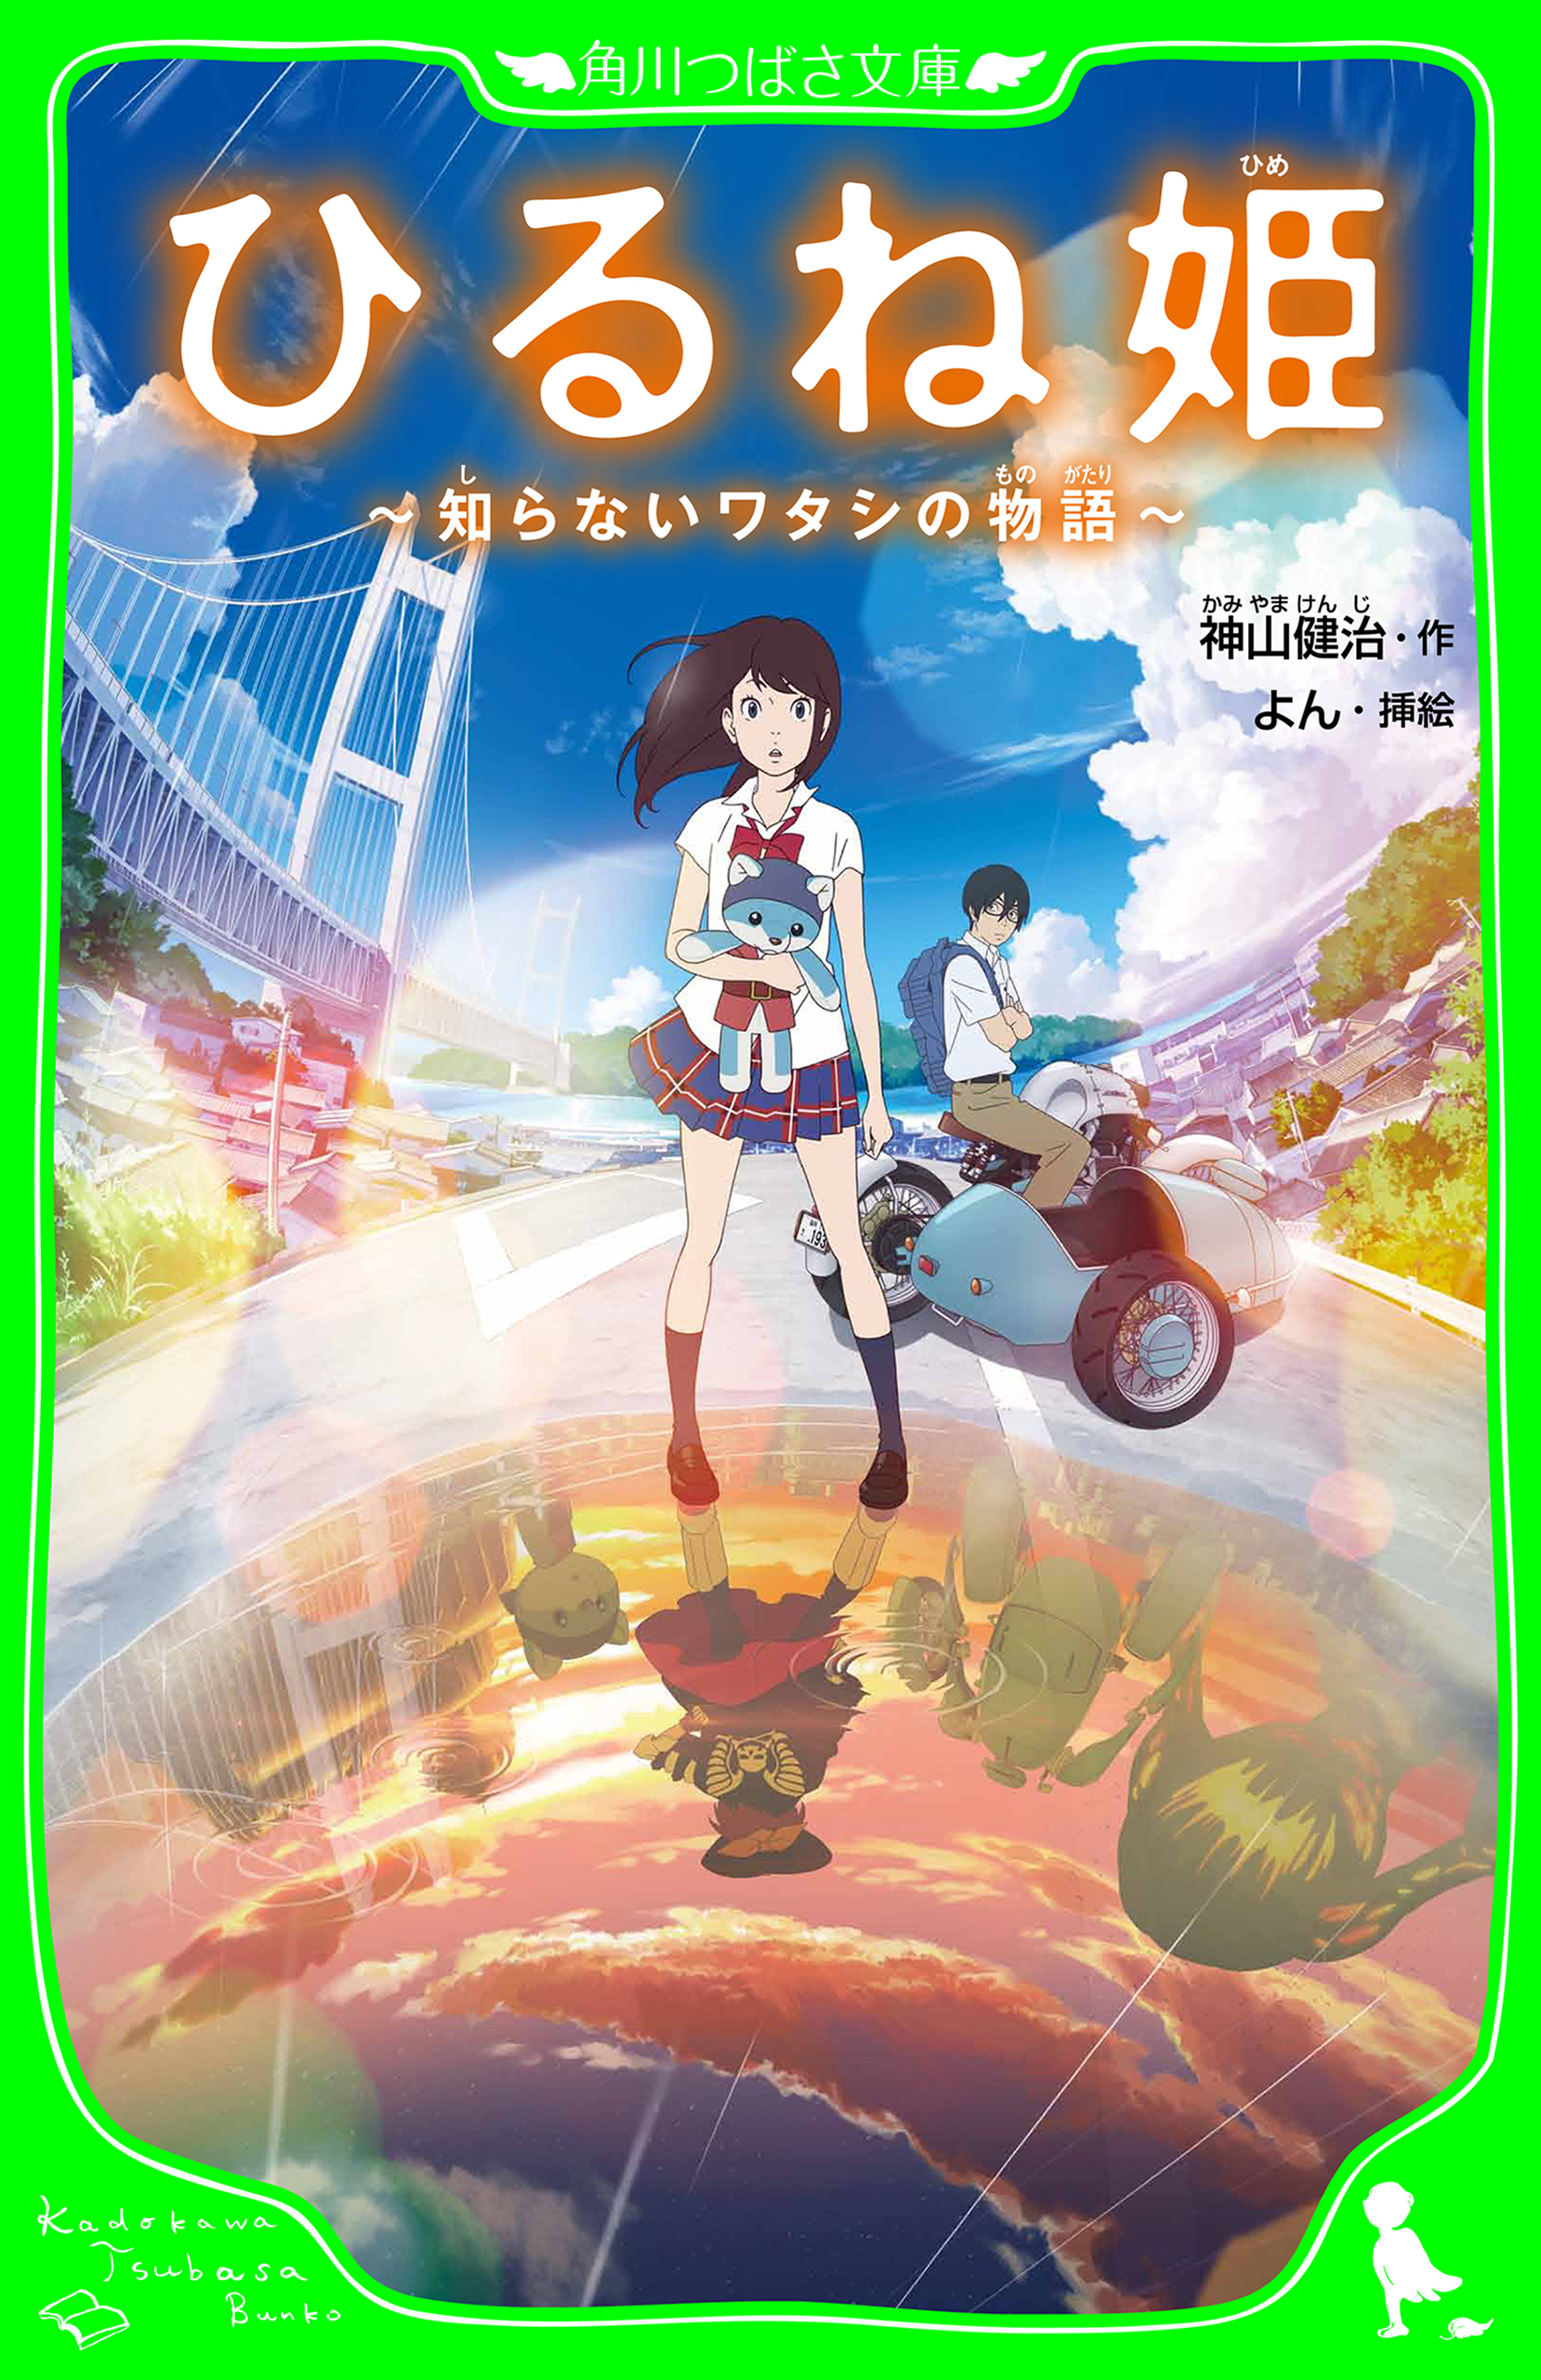 ひるね姫 〜知らないワタシの物語〜 Blu-rayスペシャル・エディション